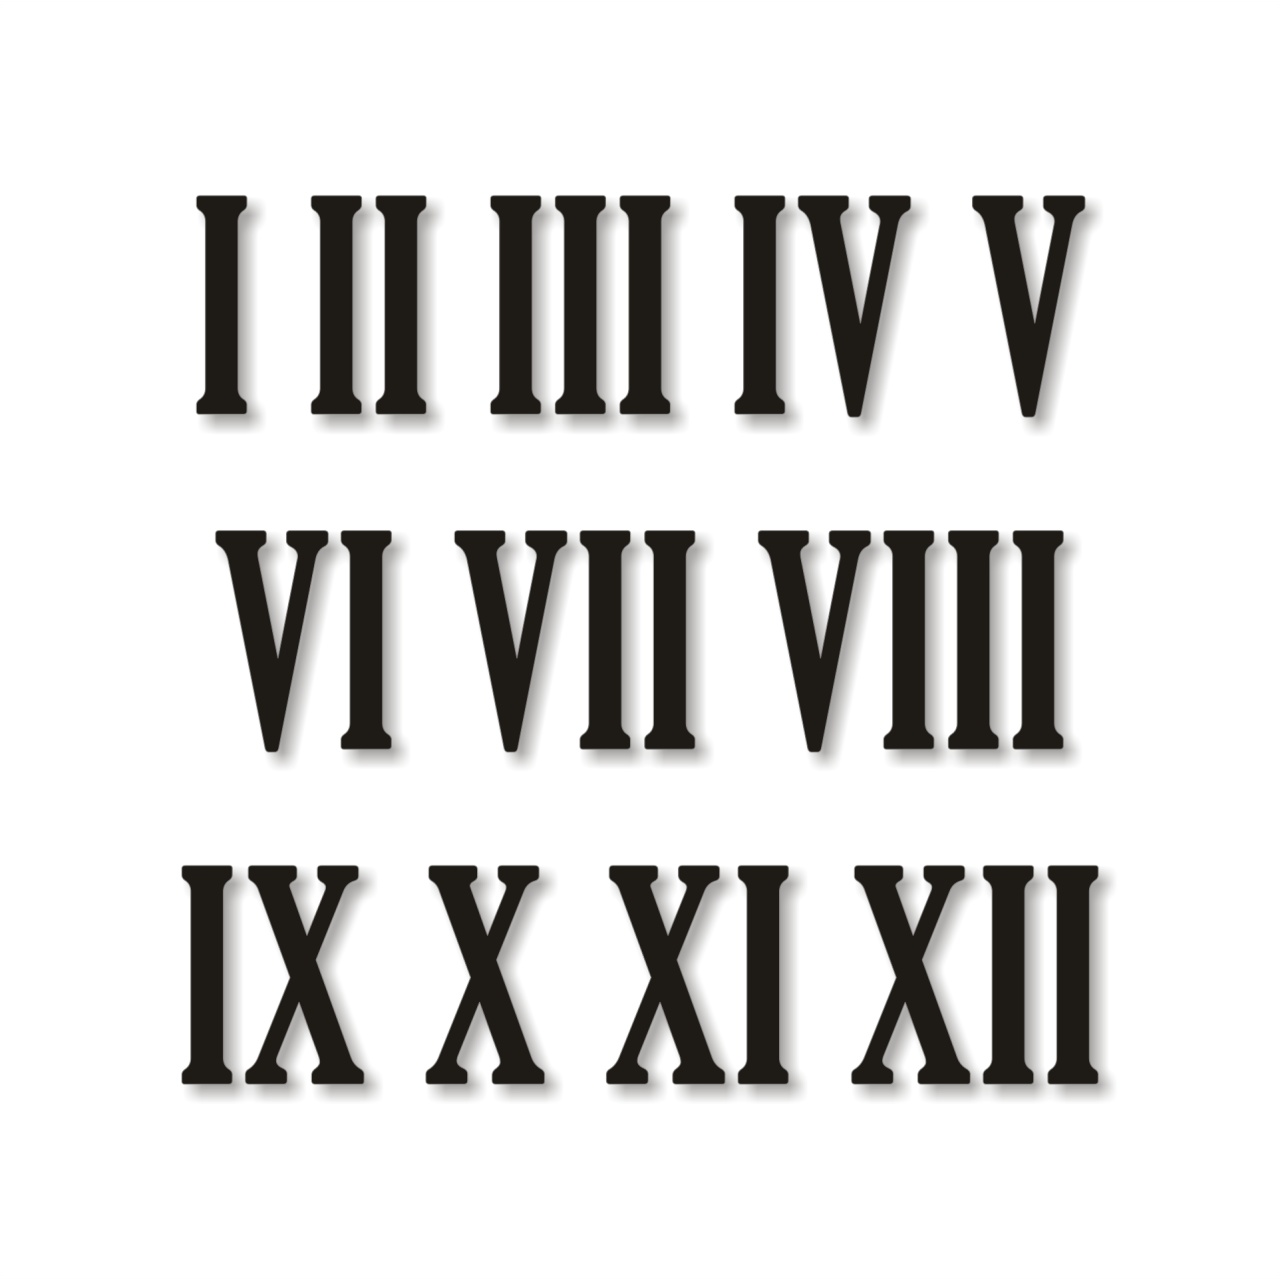 Cifre romane pentru ceas 1-12, 3 cm, HDF alb